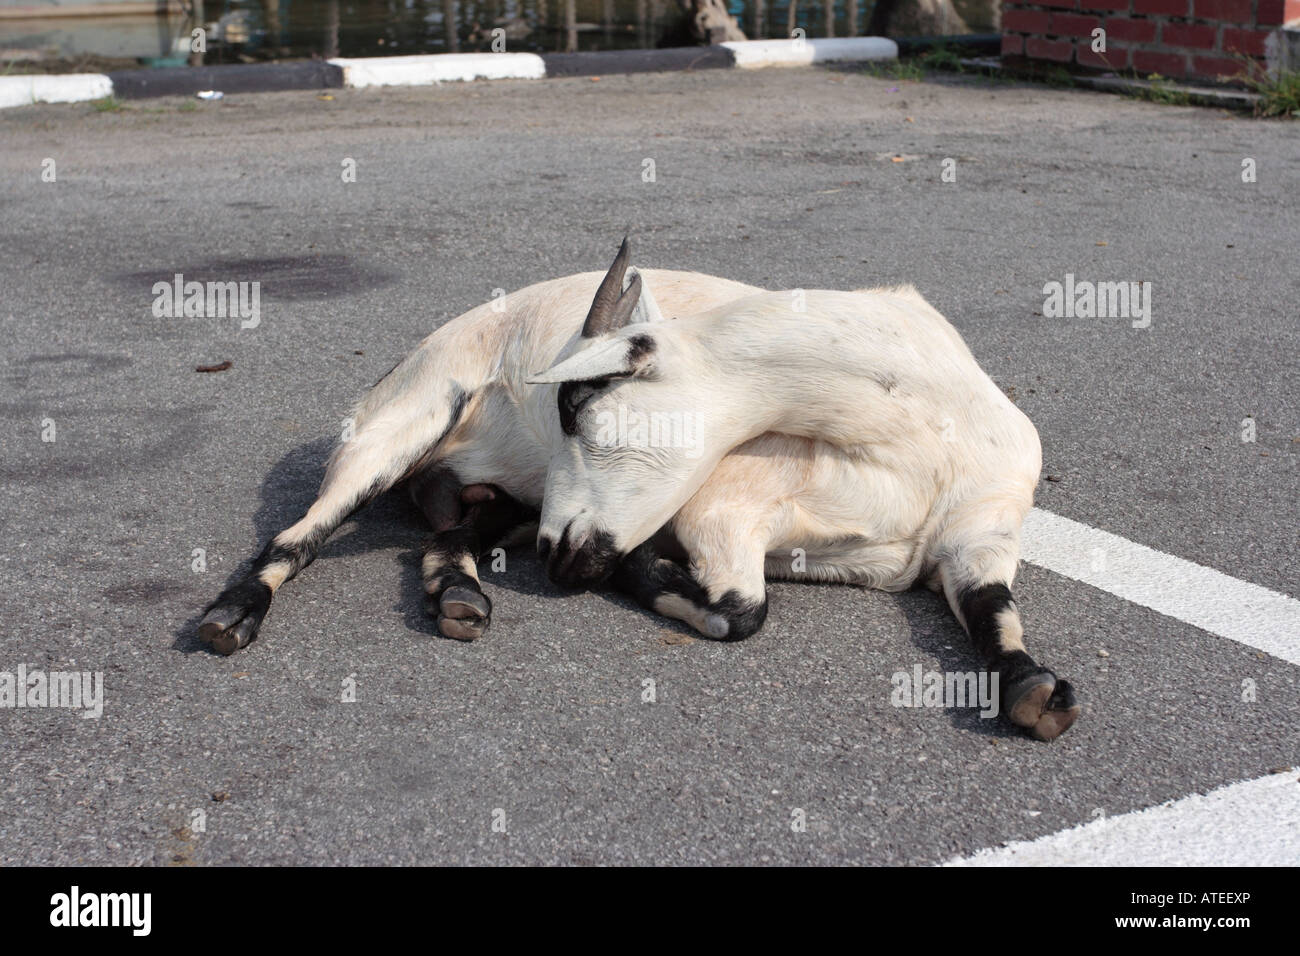 Eine Ziege in tiefen schlafen unter heißer Sonne auf Asphalt Stockfoto